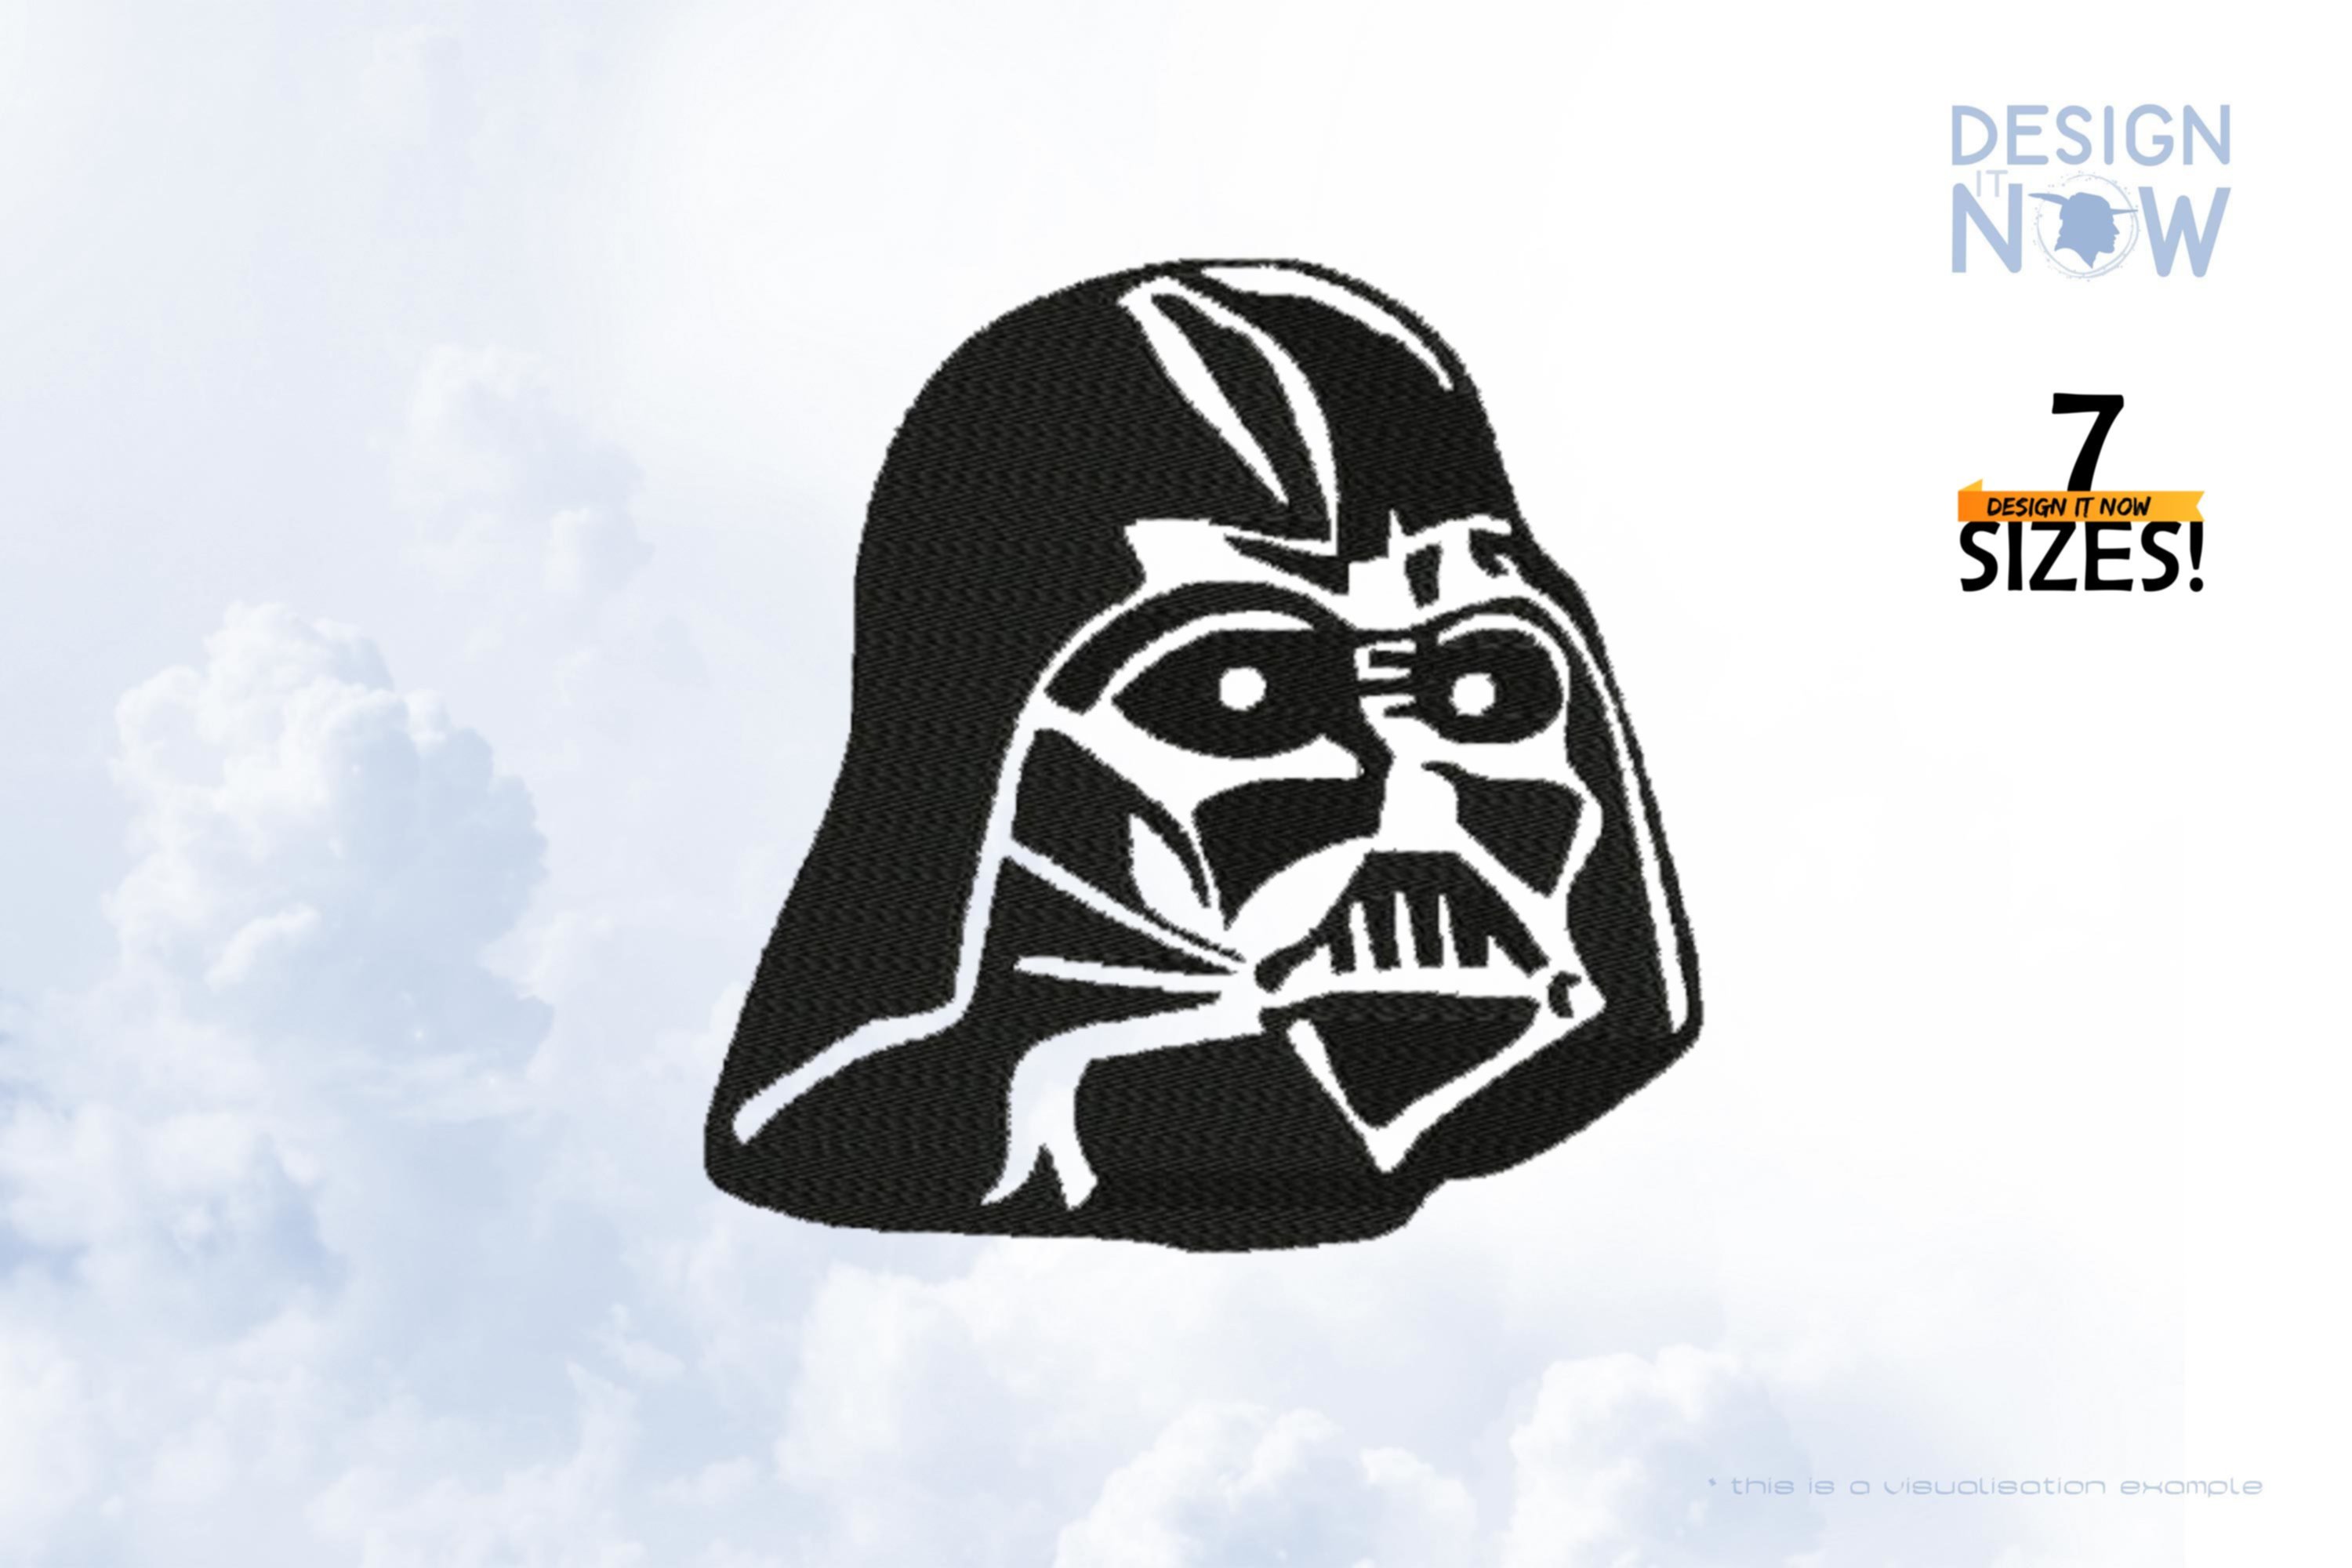 Tribute To Fictional Star Wars Character Darth Vader aka Darth Vader 